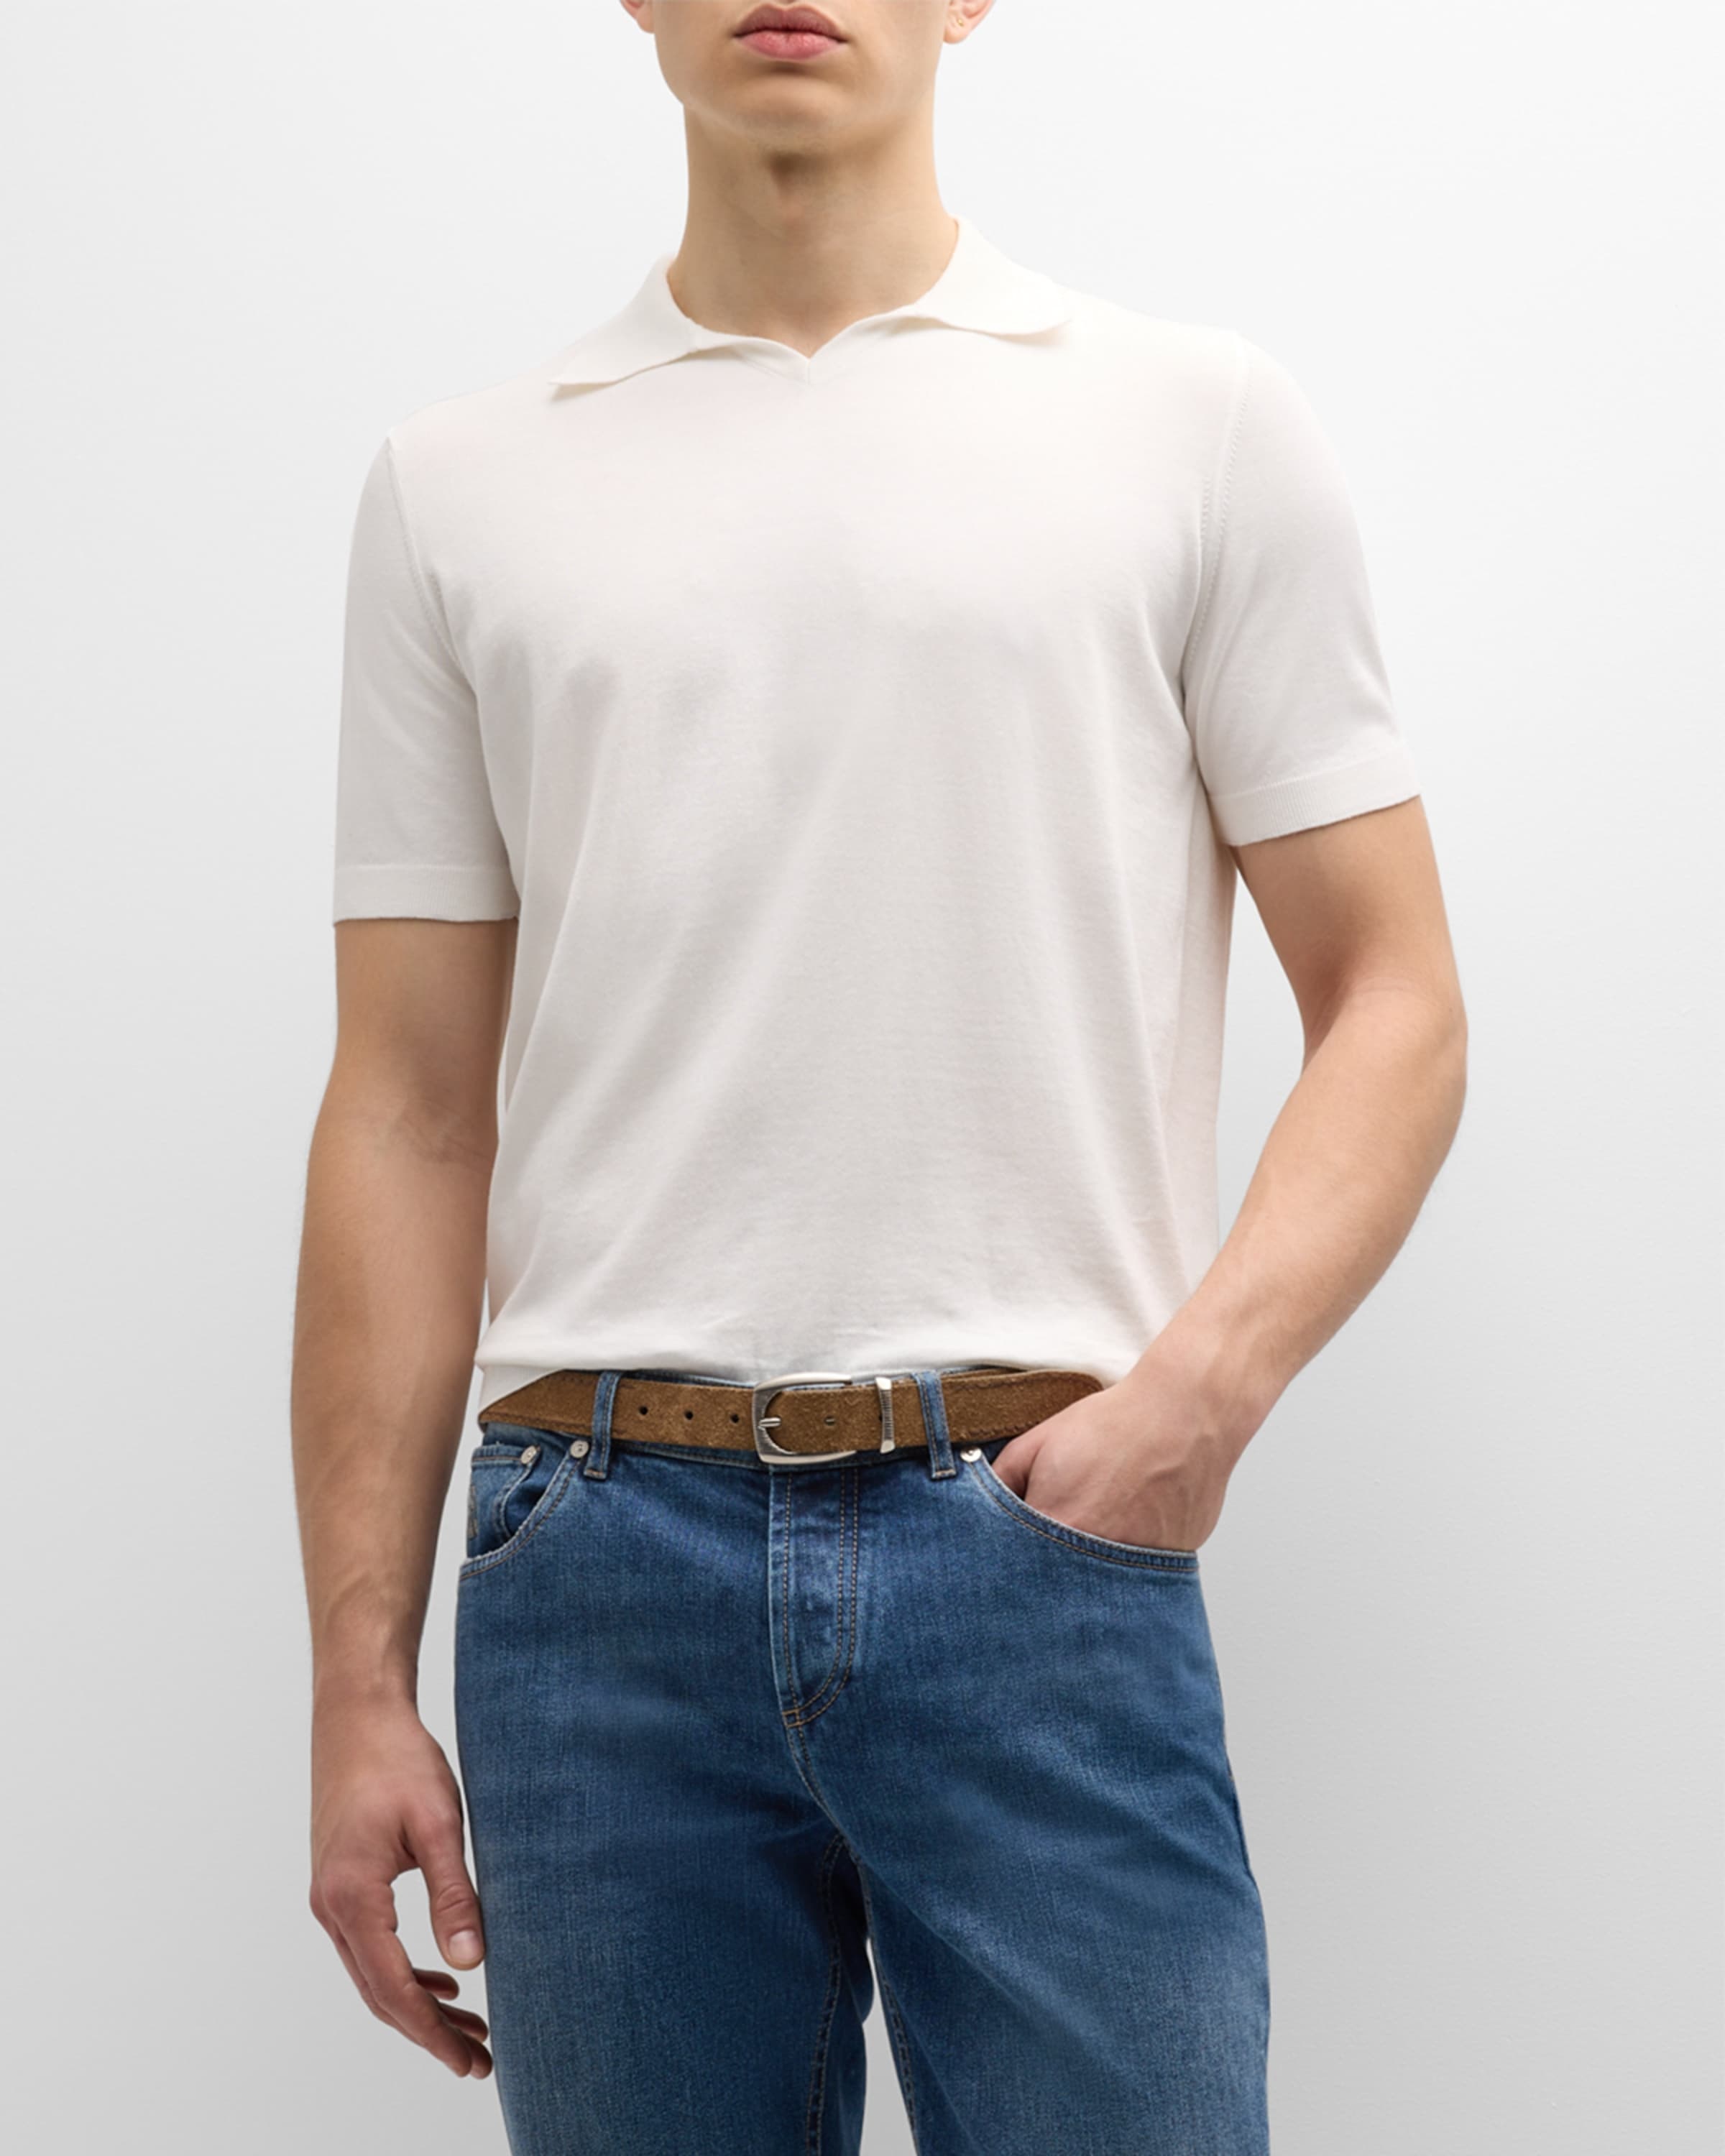 Men's Cotton Knit Johnny Collar Polo Shirt - 2